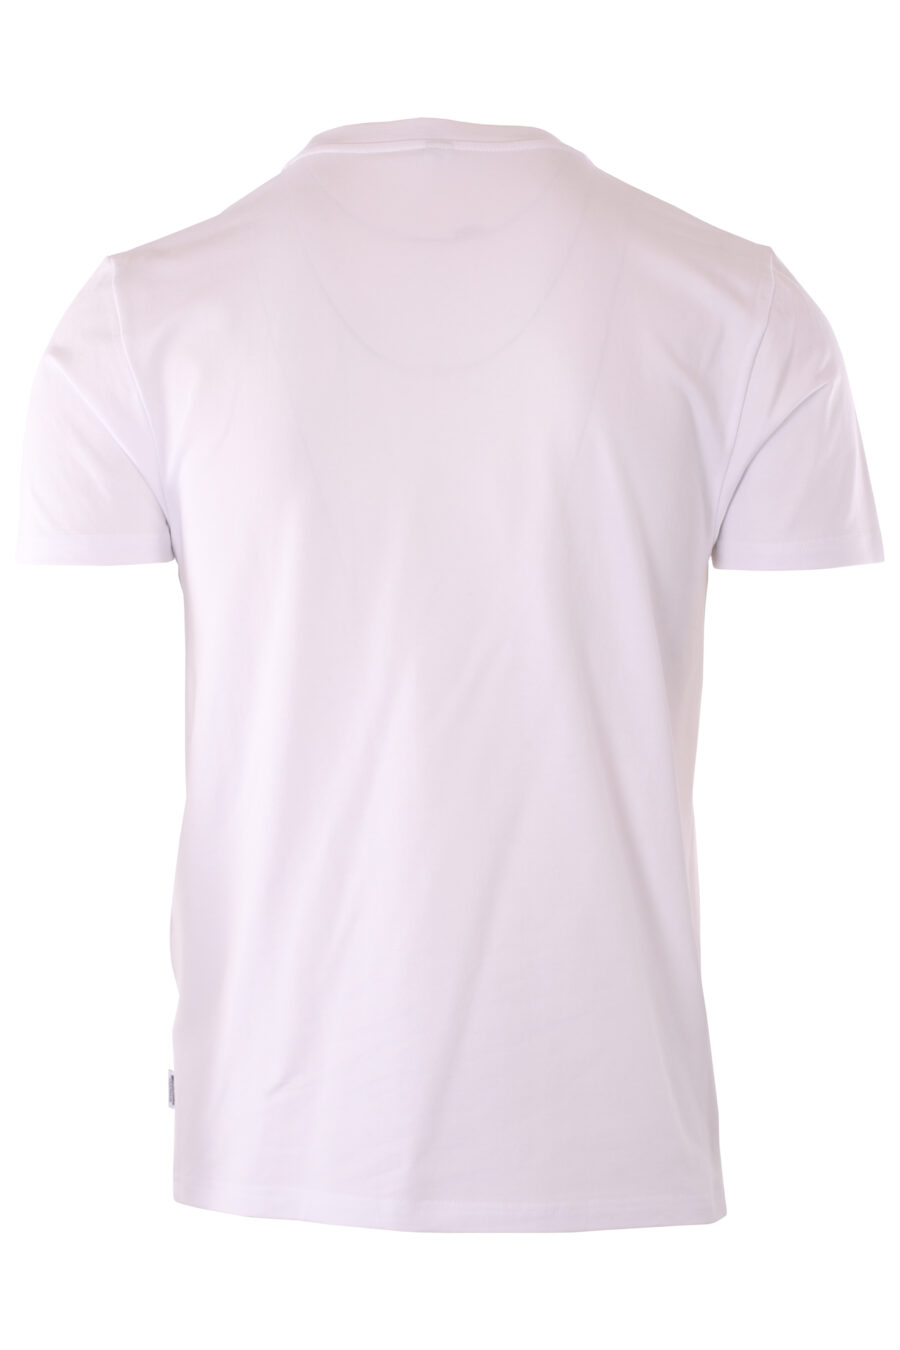 Weißes "slim fit" T-Shirt mit Bärchen-Minilogo "underbear" - IMG 6608